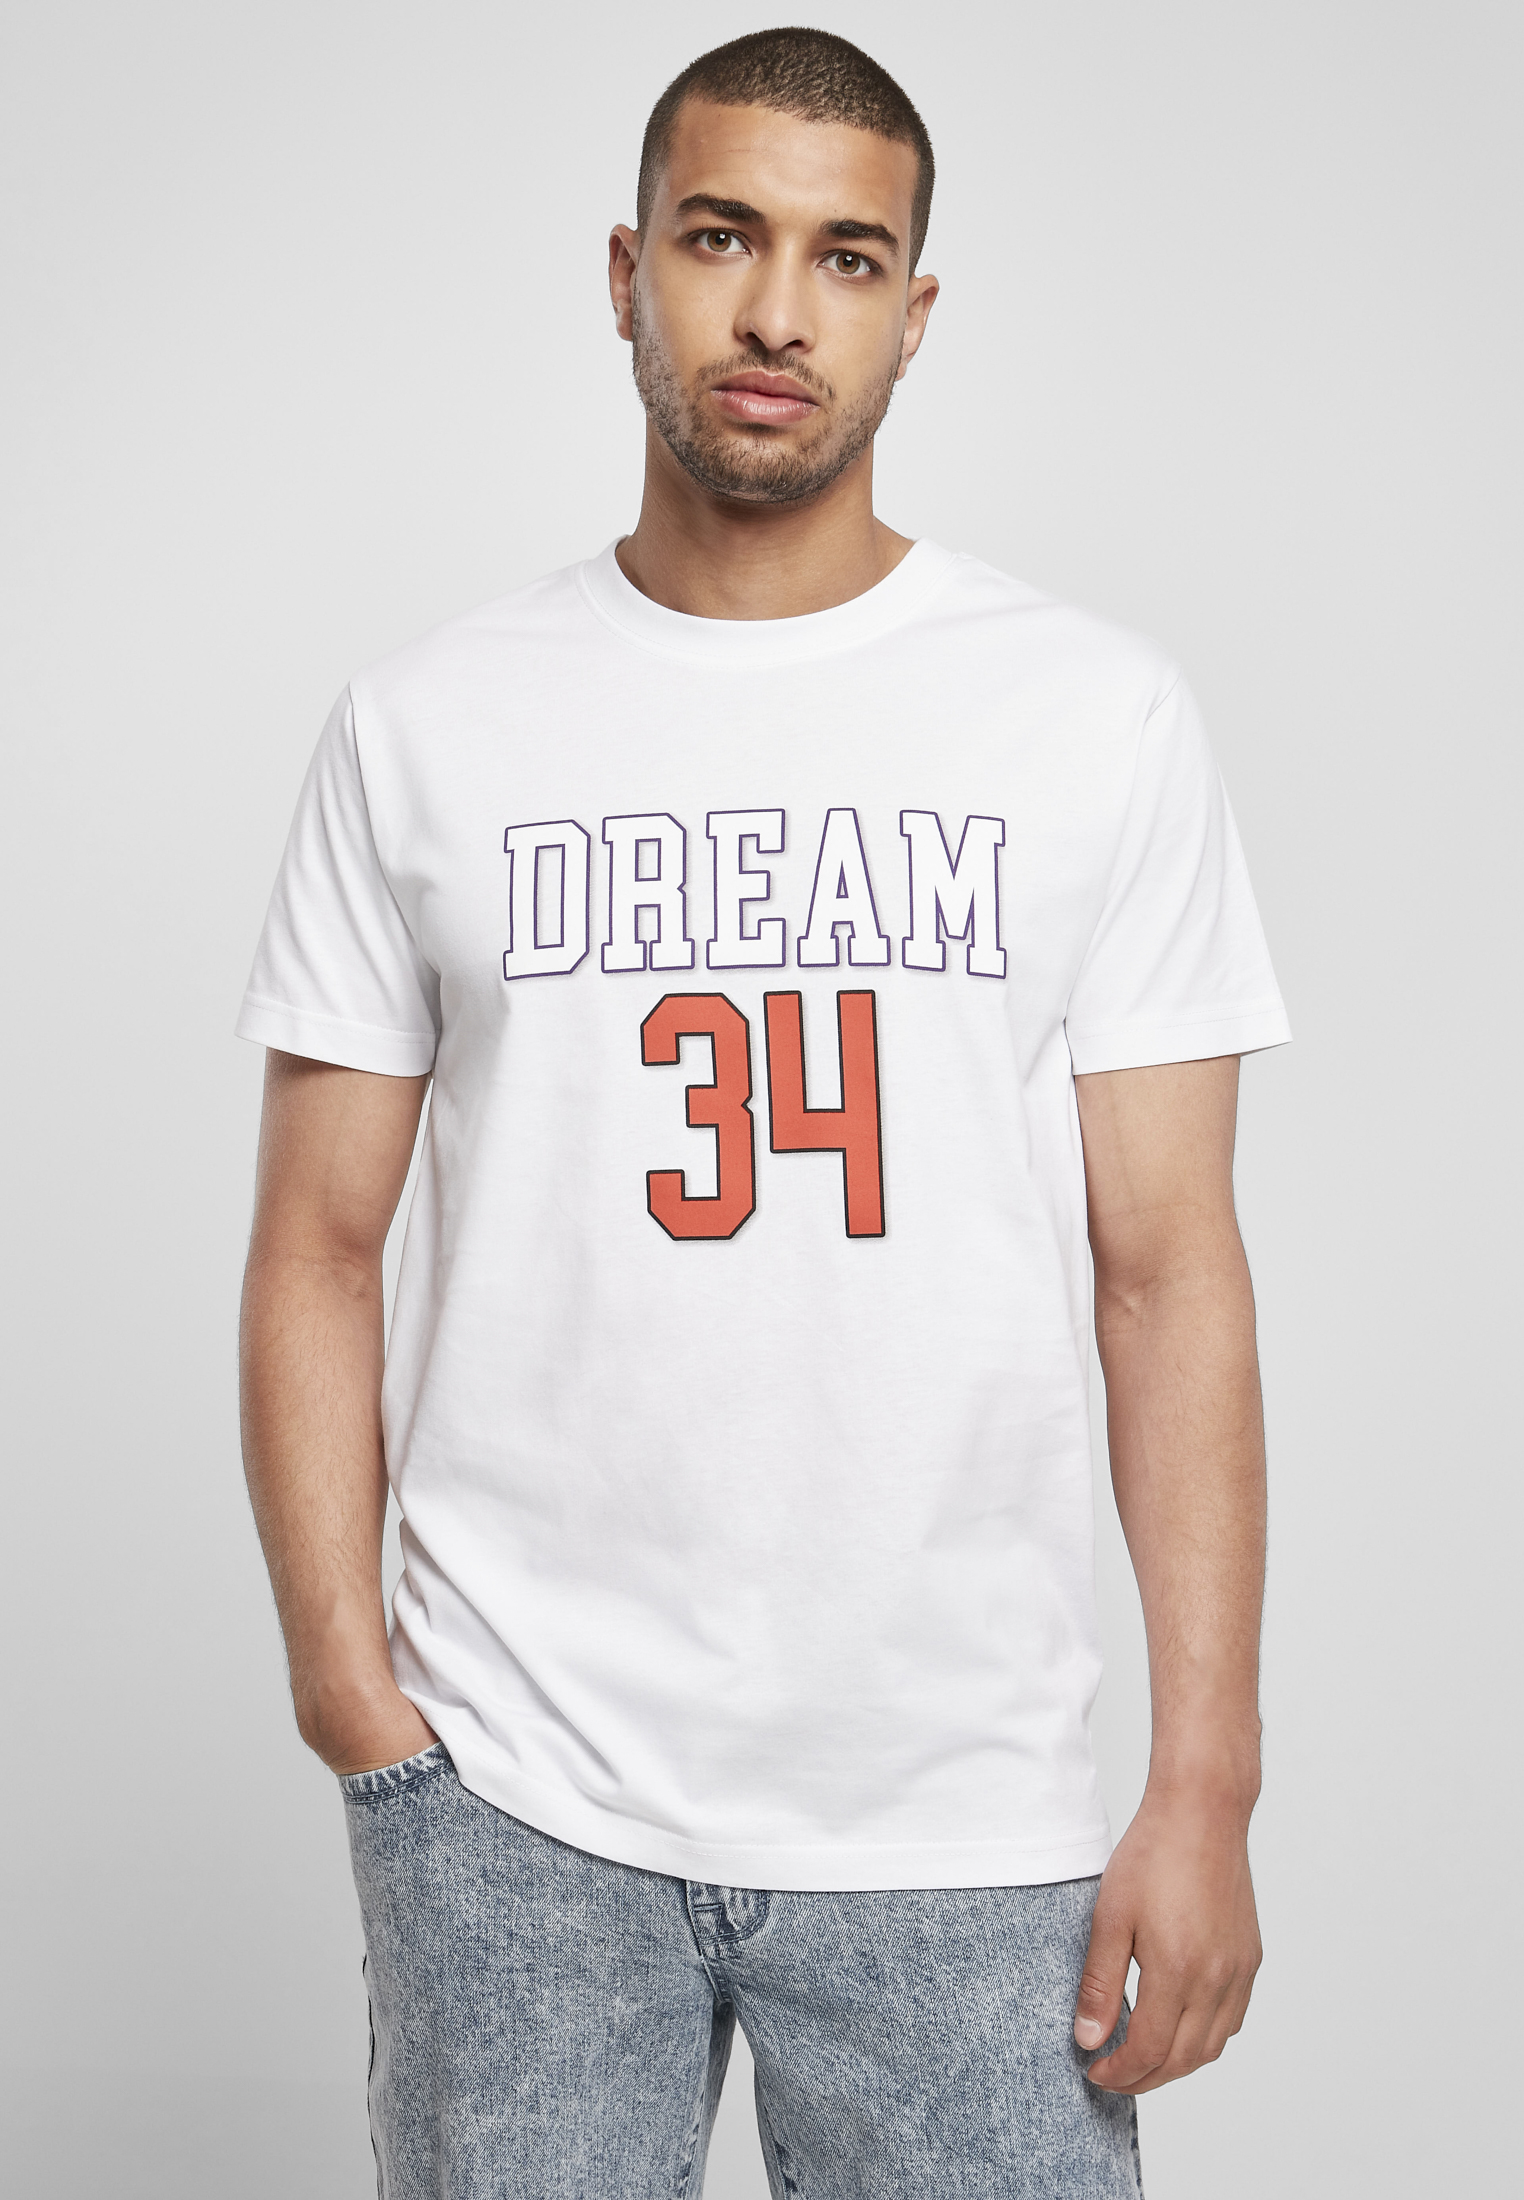 T-shirt Dream 34 white